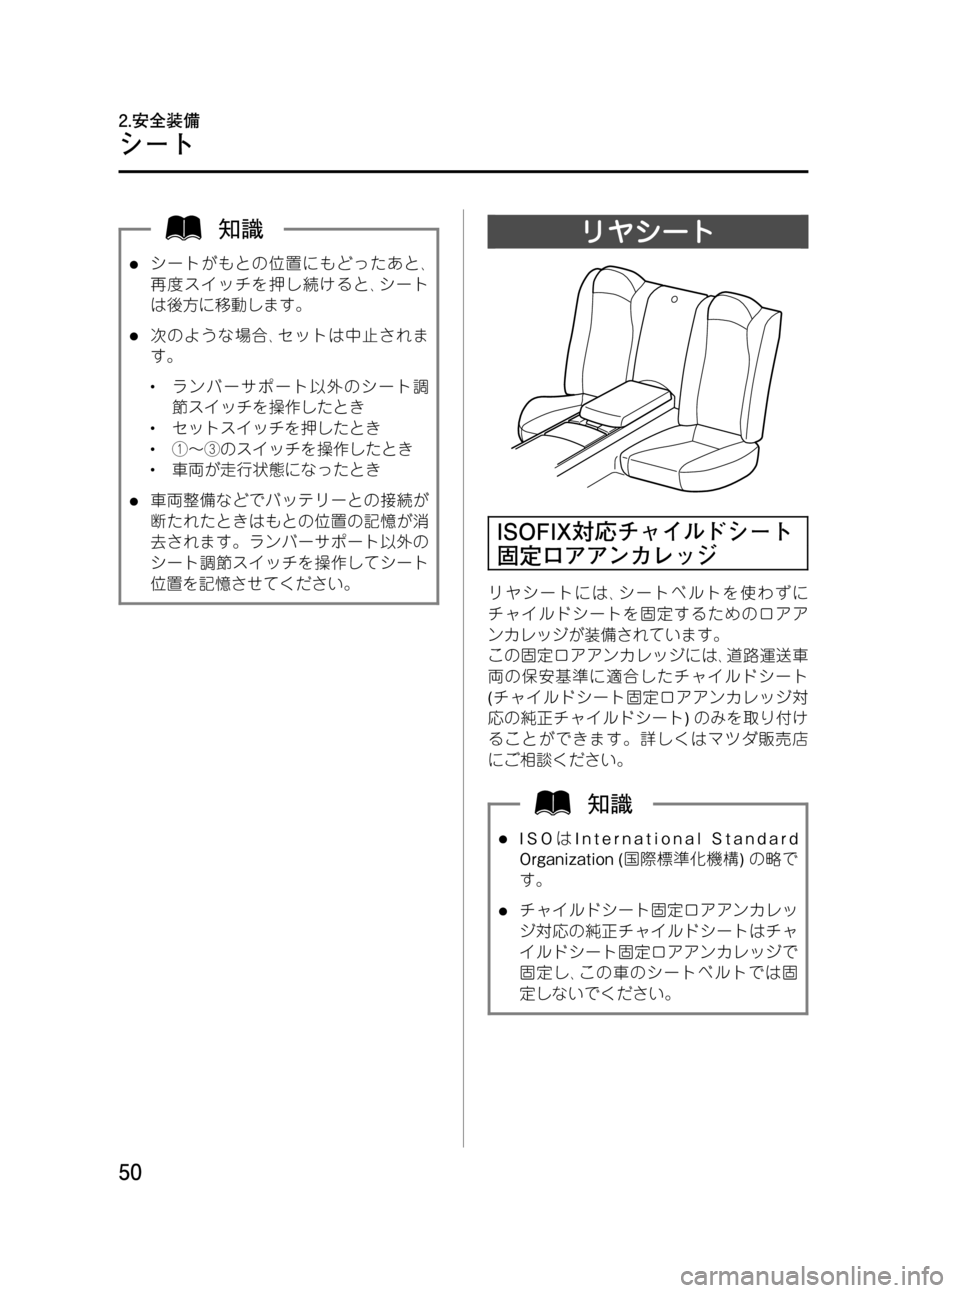 MAZDA MODEL RX 8 2008  取扱説明書 (in Japanese) Black plate (50,1)
lシートがもとの位置にもどったあと､
再度スイッチを押し続けると､シート
は後方に移動します。
l次のような場合､セットは中止�